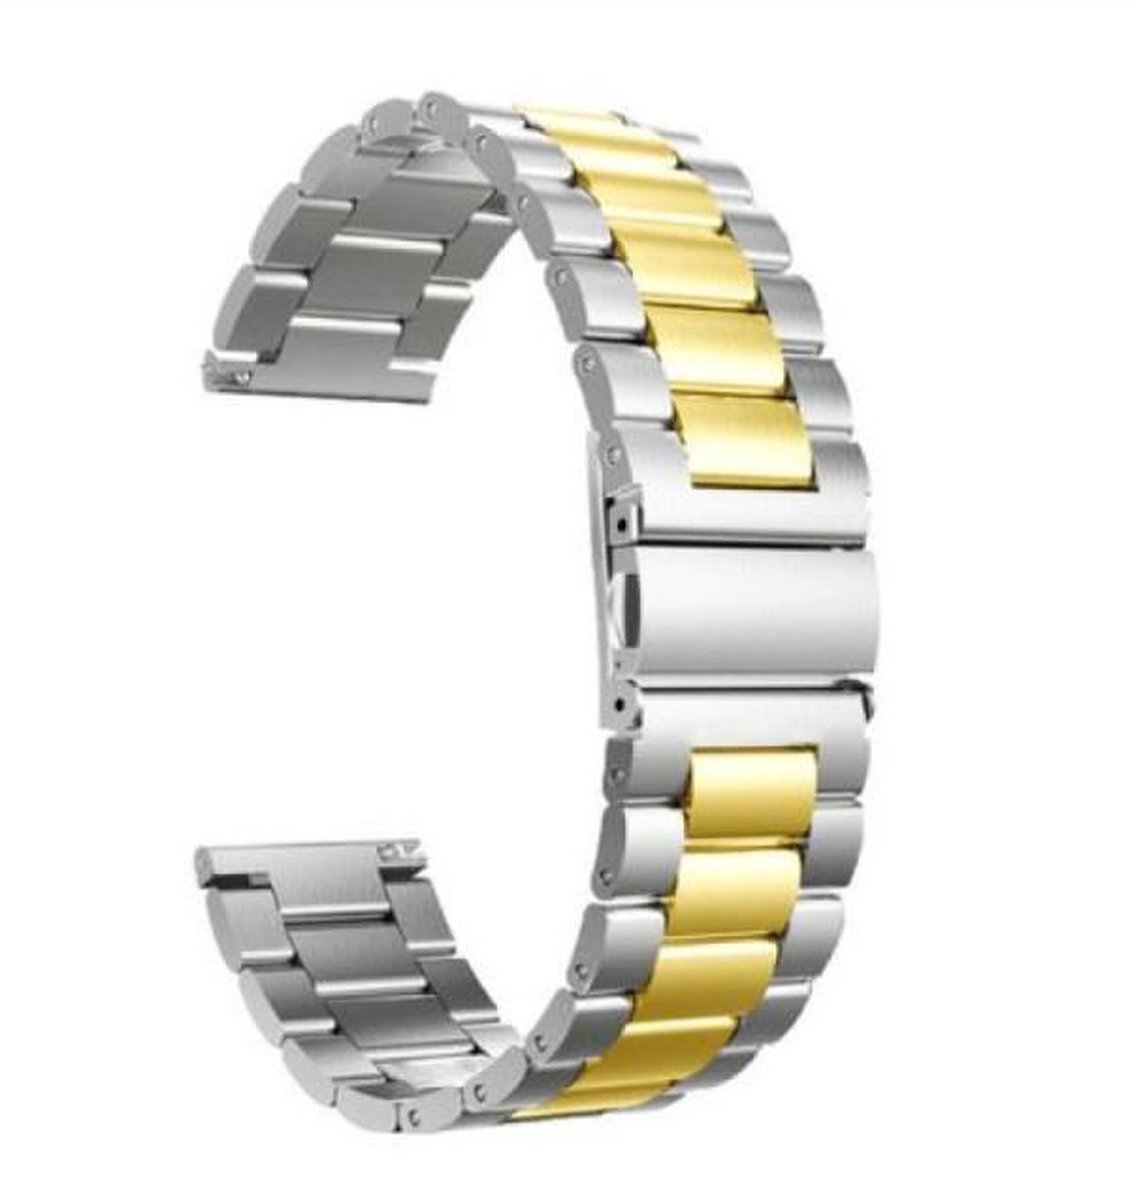 Remerko horlogeband - vouwsluiting met drukknoppen - edelstaal 18mm